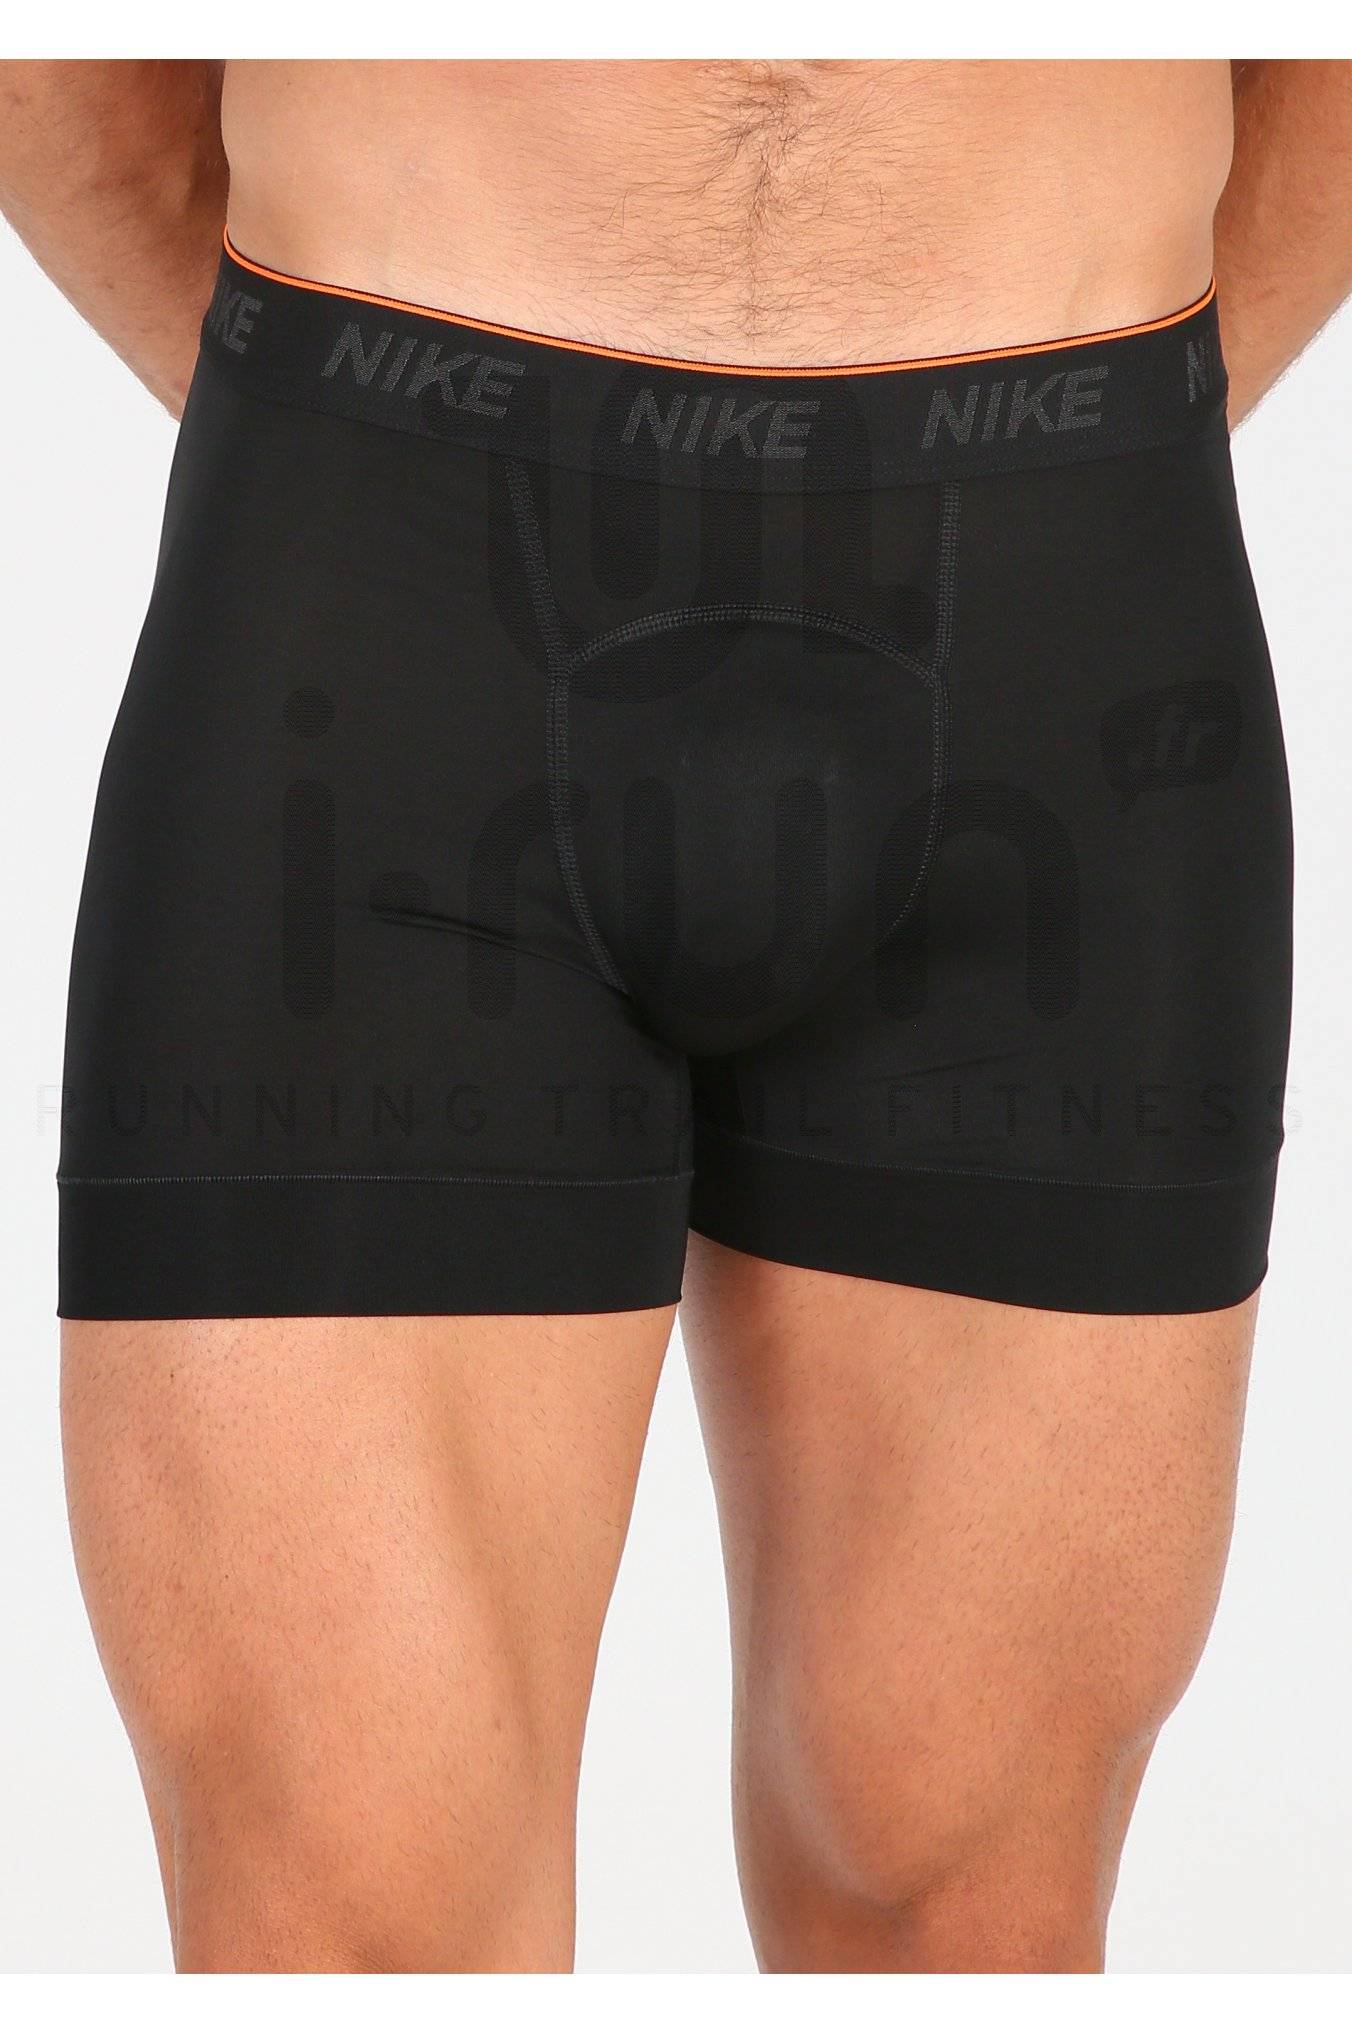 Nike Lot de 2 boxers Brief M - Vêtements homme Sous-vêtements